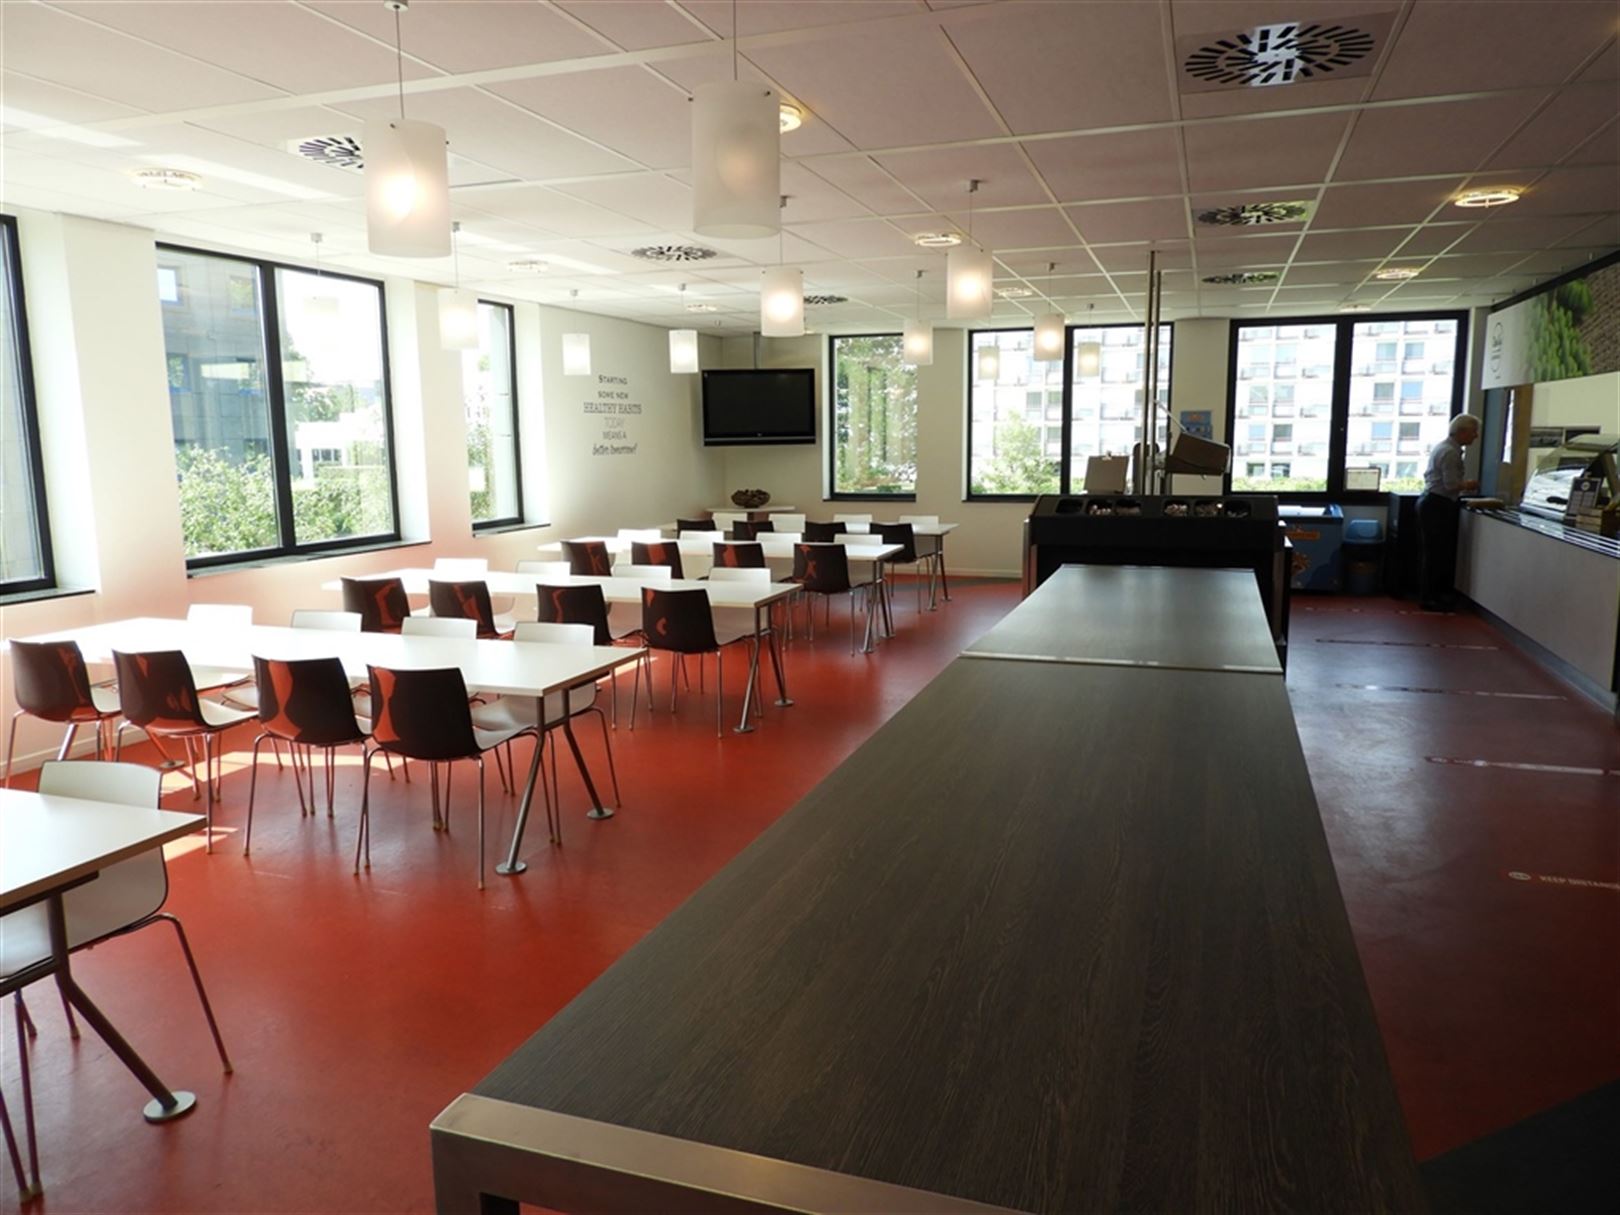 BERKENLAAN 3: kantoorgebouw strategisch in Diegem gelegen met beschikbare oppervlaktes vanaf ong. 600m² tot ong. 1.300m² foto 5